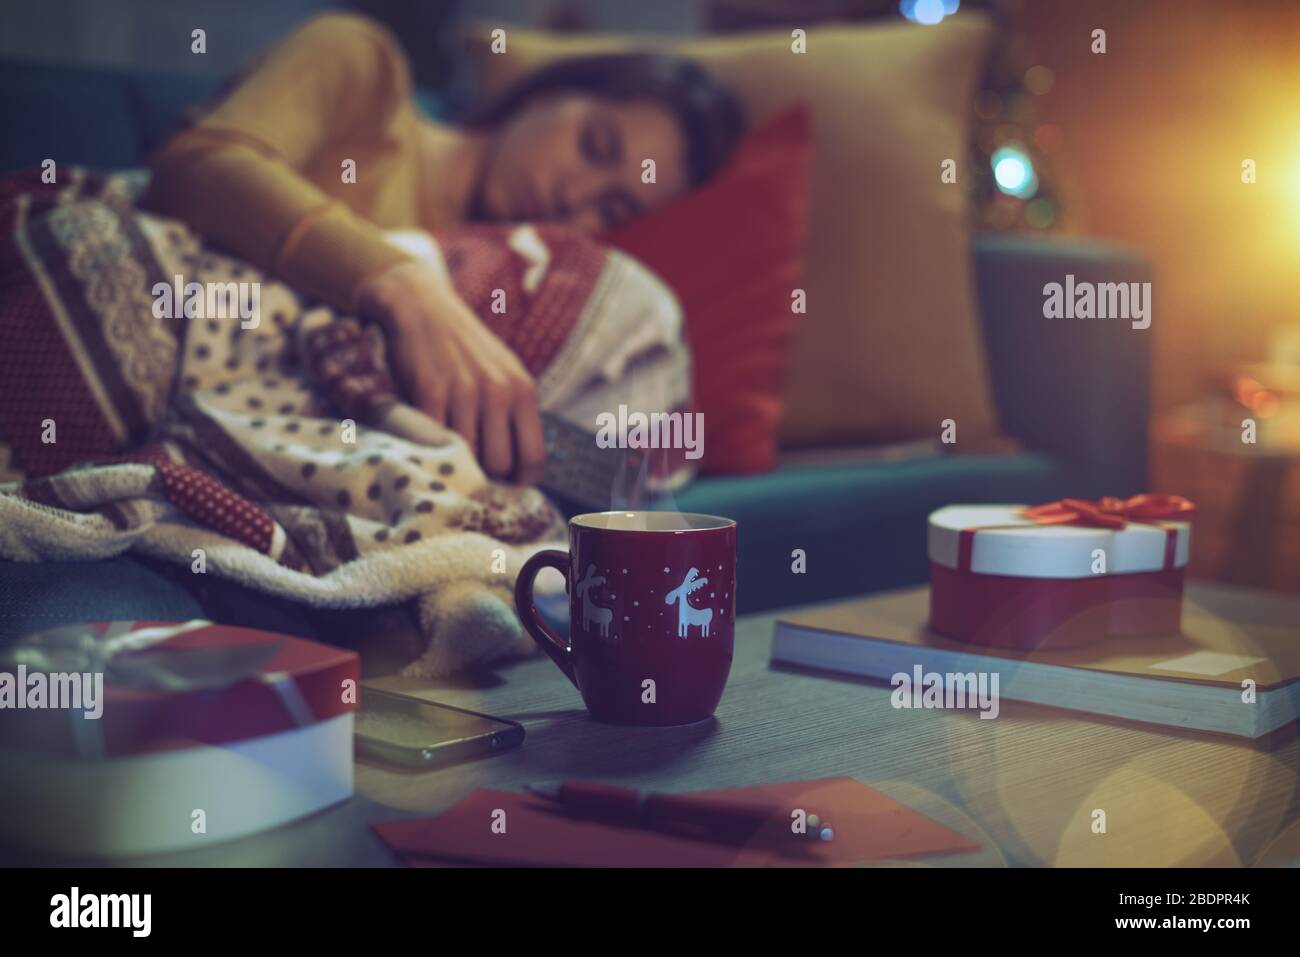 Jeune femme allongé sur le canapé et s'endormi la veille de Noël, elle tient la télécommande de la télévision, cadeaux au premier plan Banque D'Images